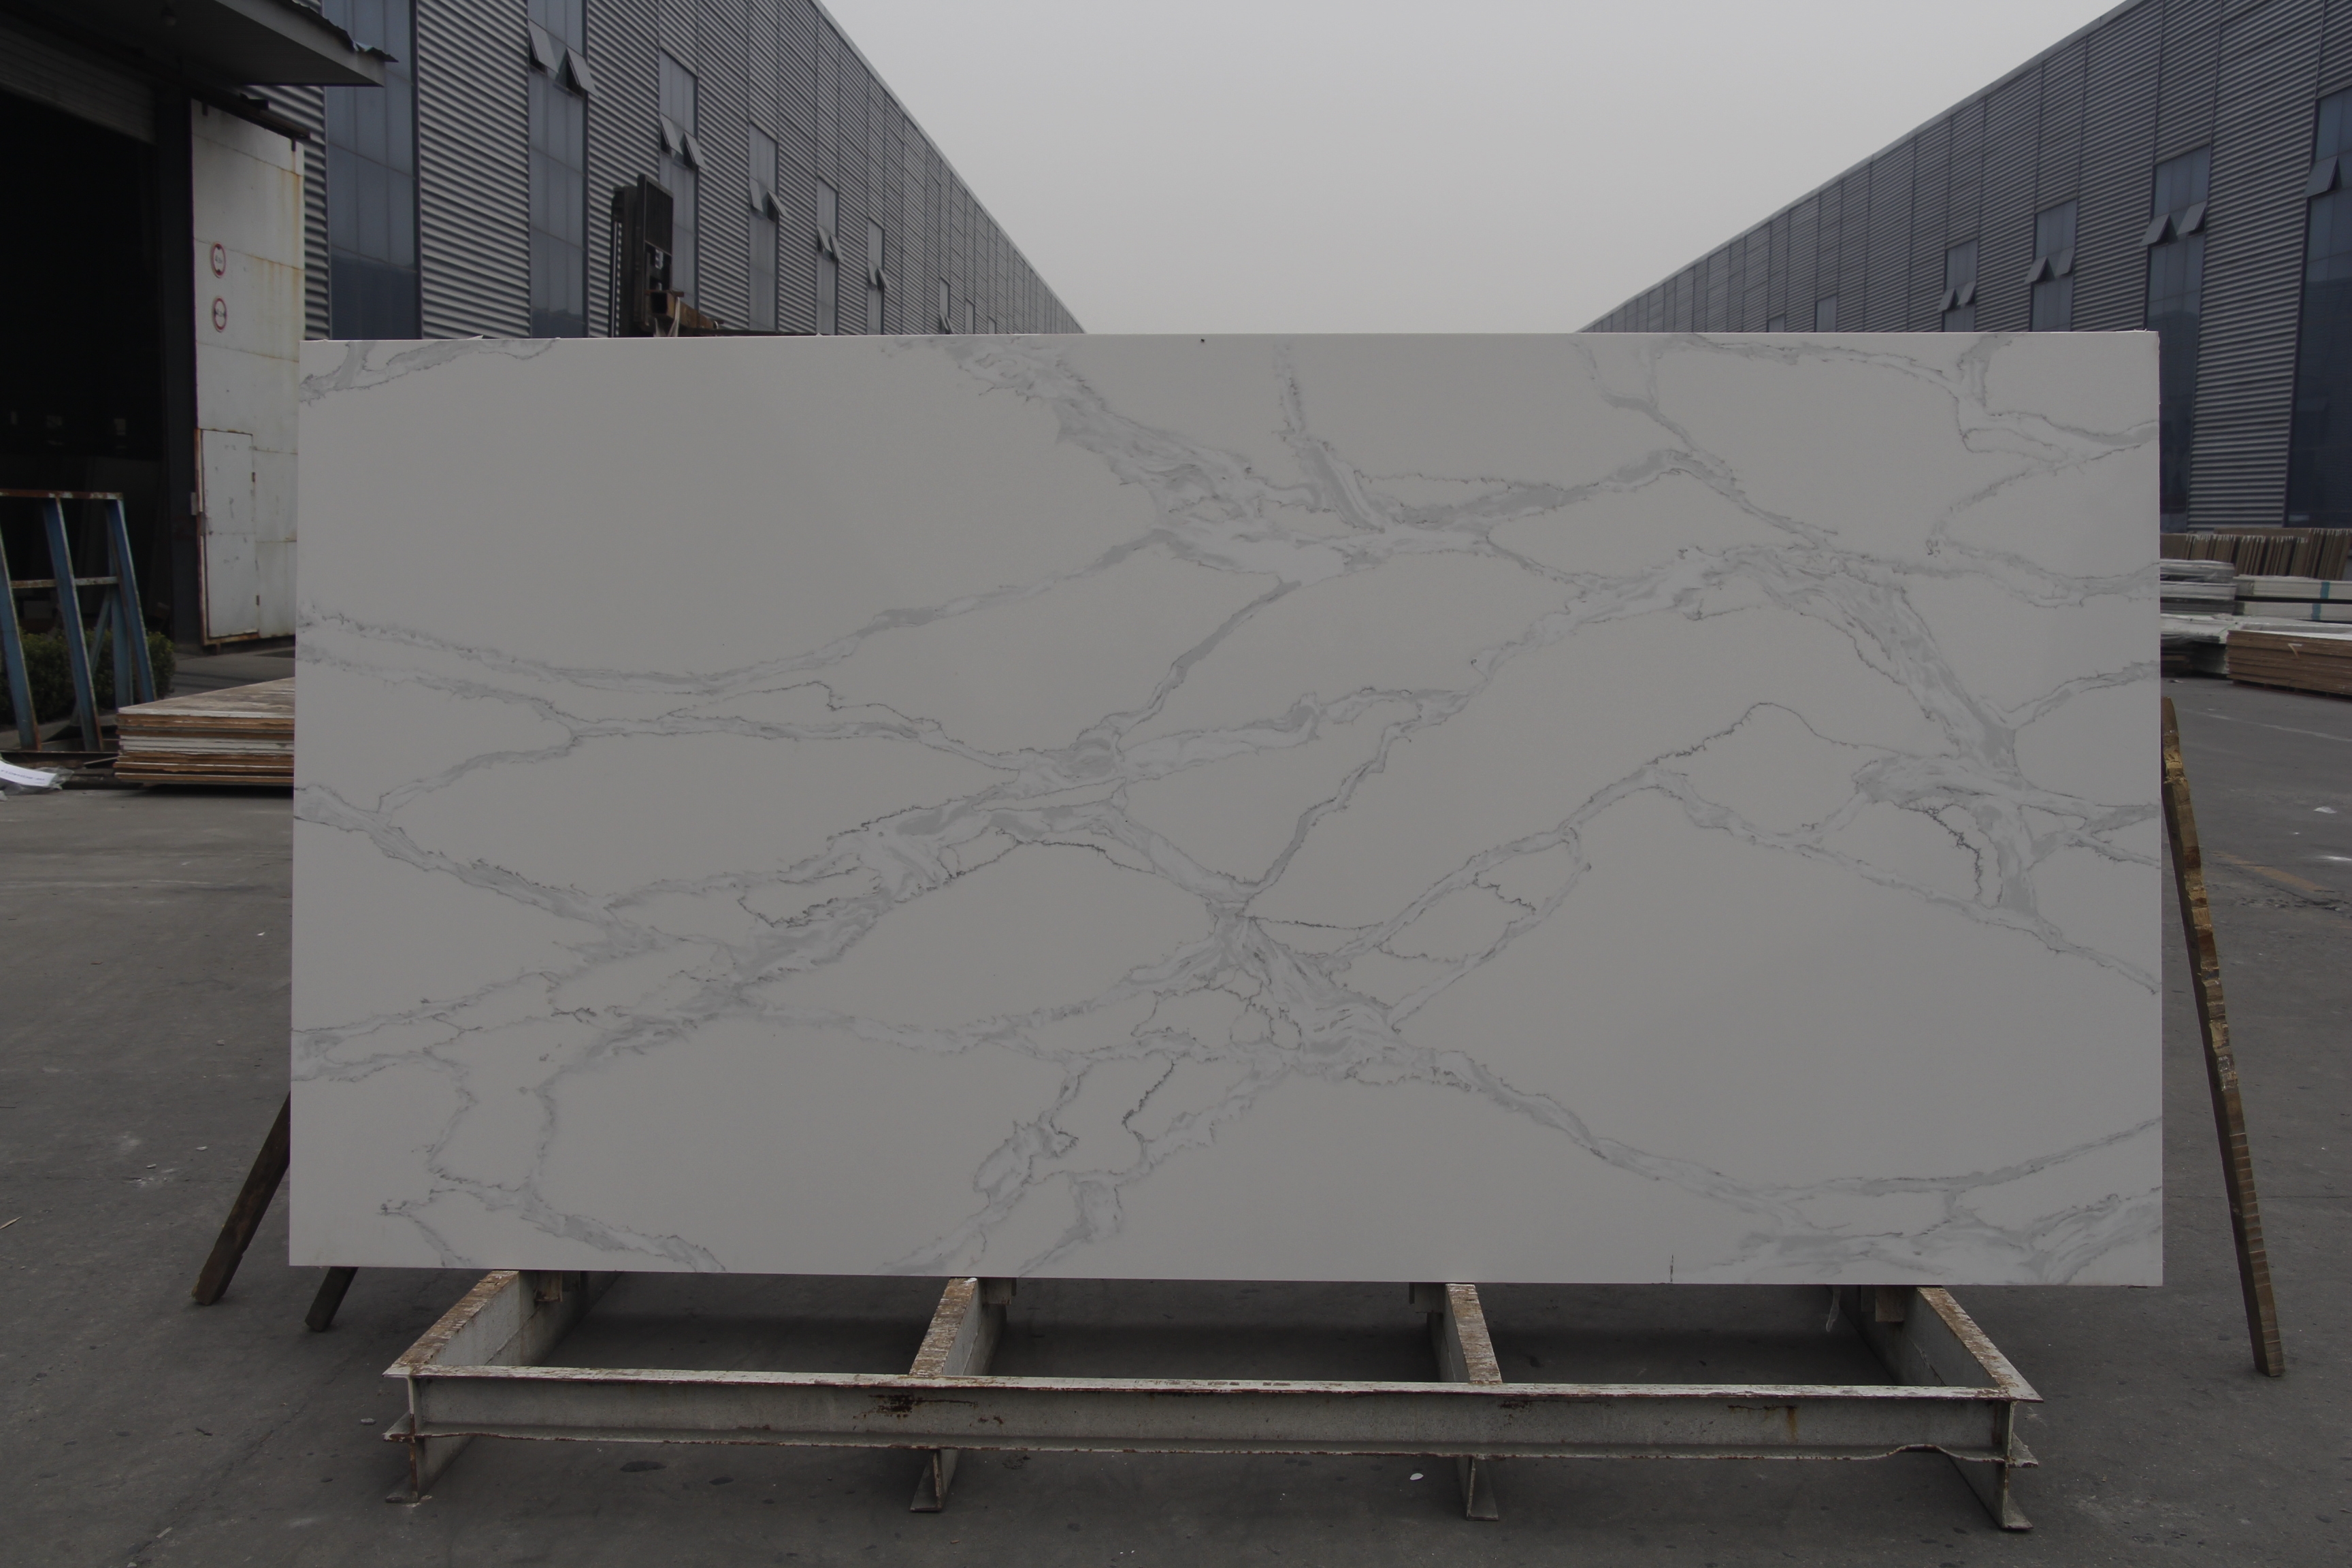 თეთრი კვარცის ქვის ფილები ვენური ხელოვნური ქვით დამზადებულია ჩინეთში 4092